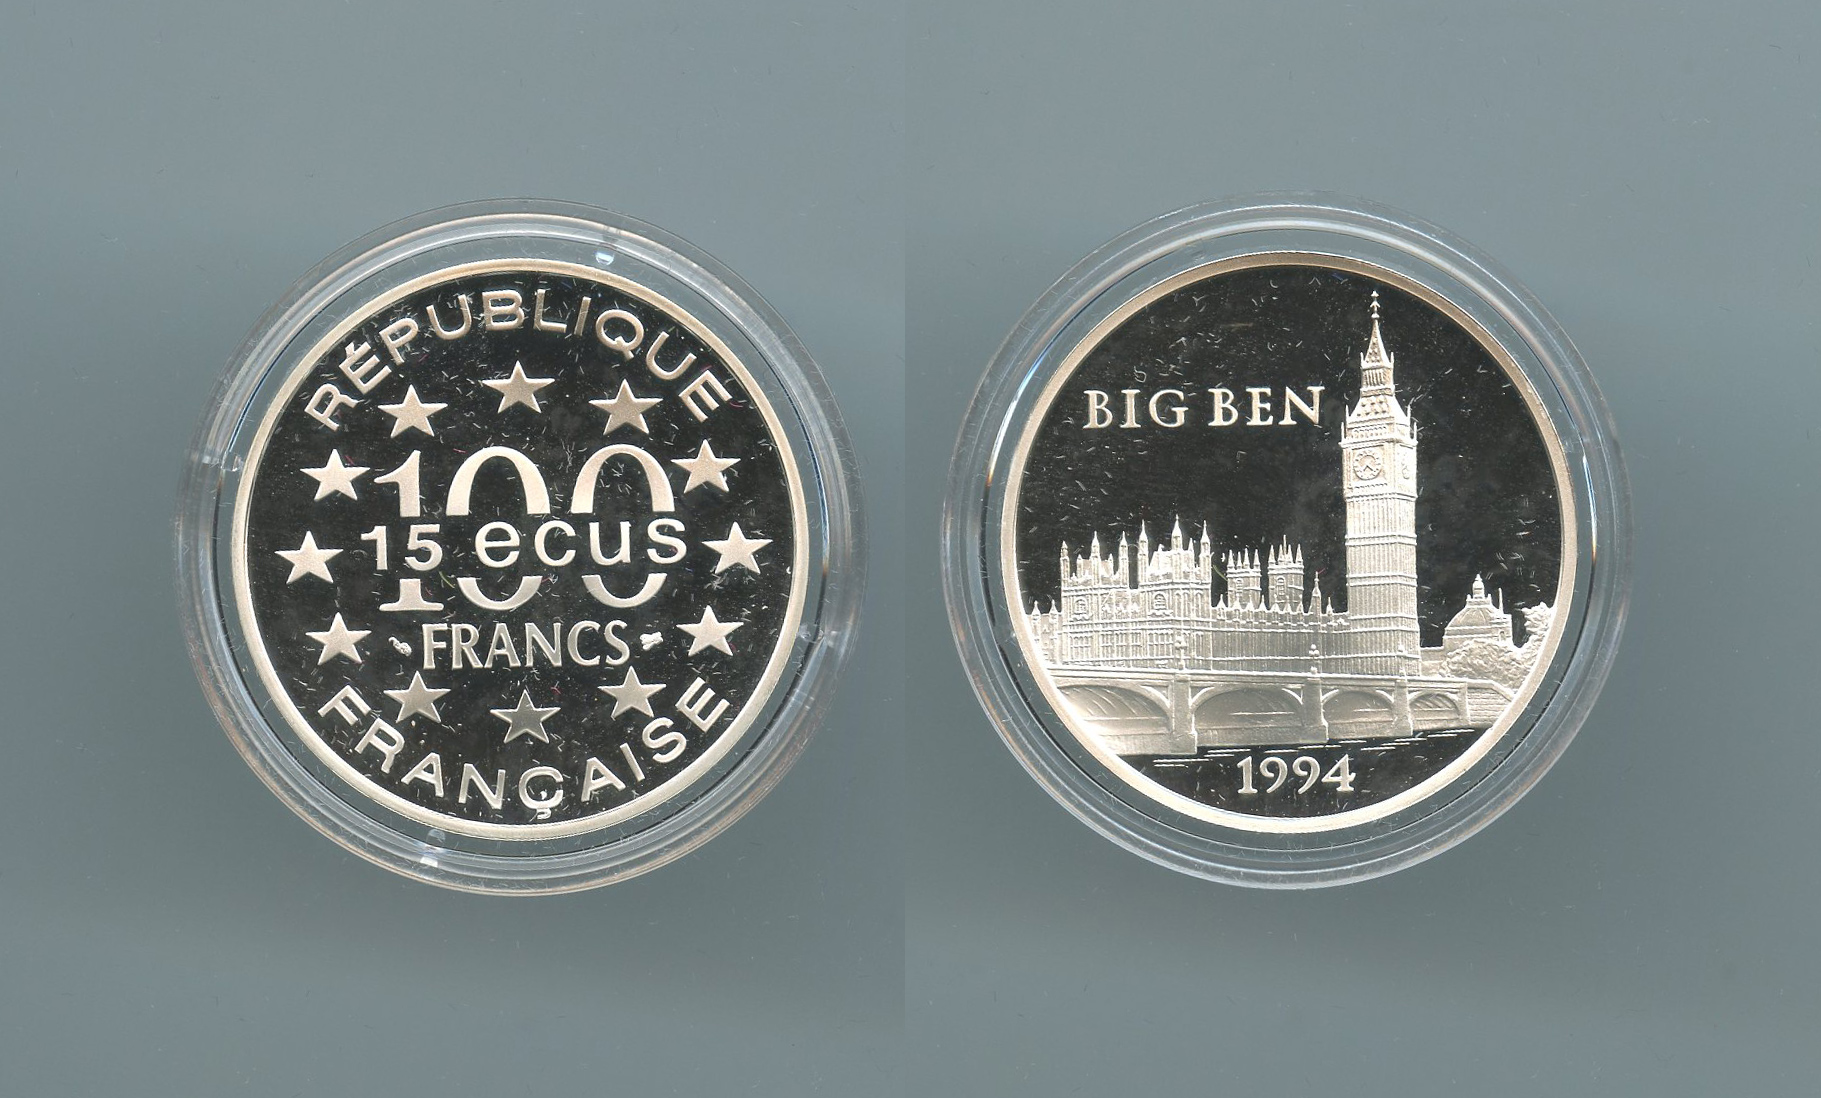 FRANCIA, 100 Francs - 15 Ecus 1994 "Big Ben"